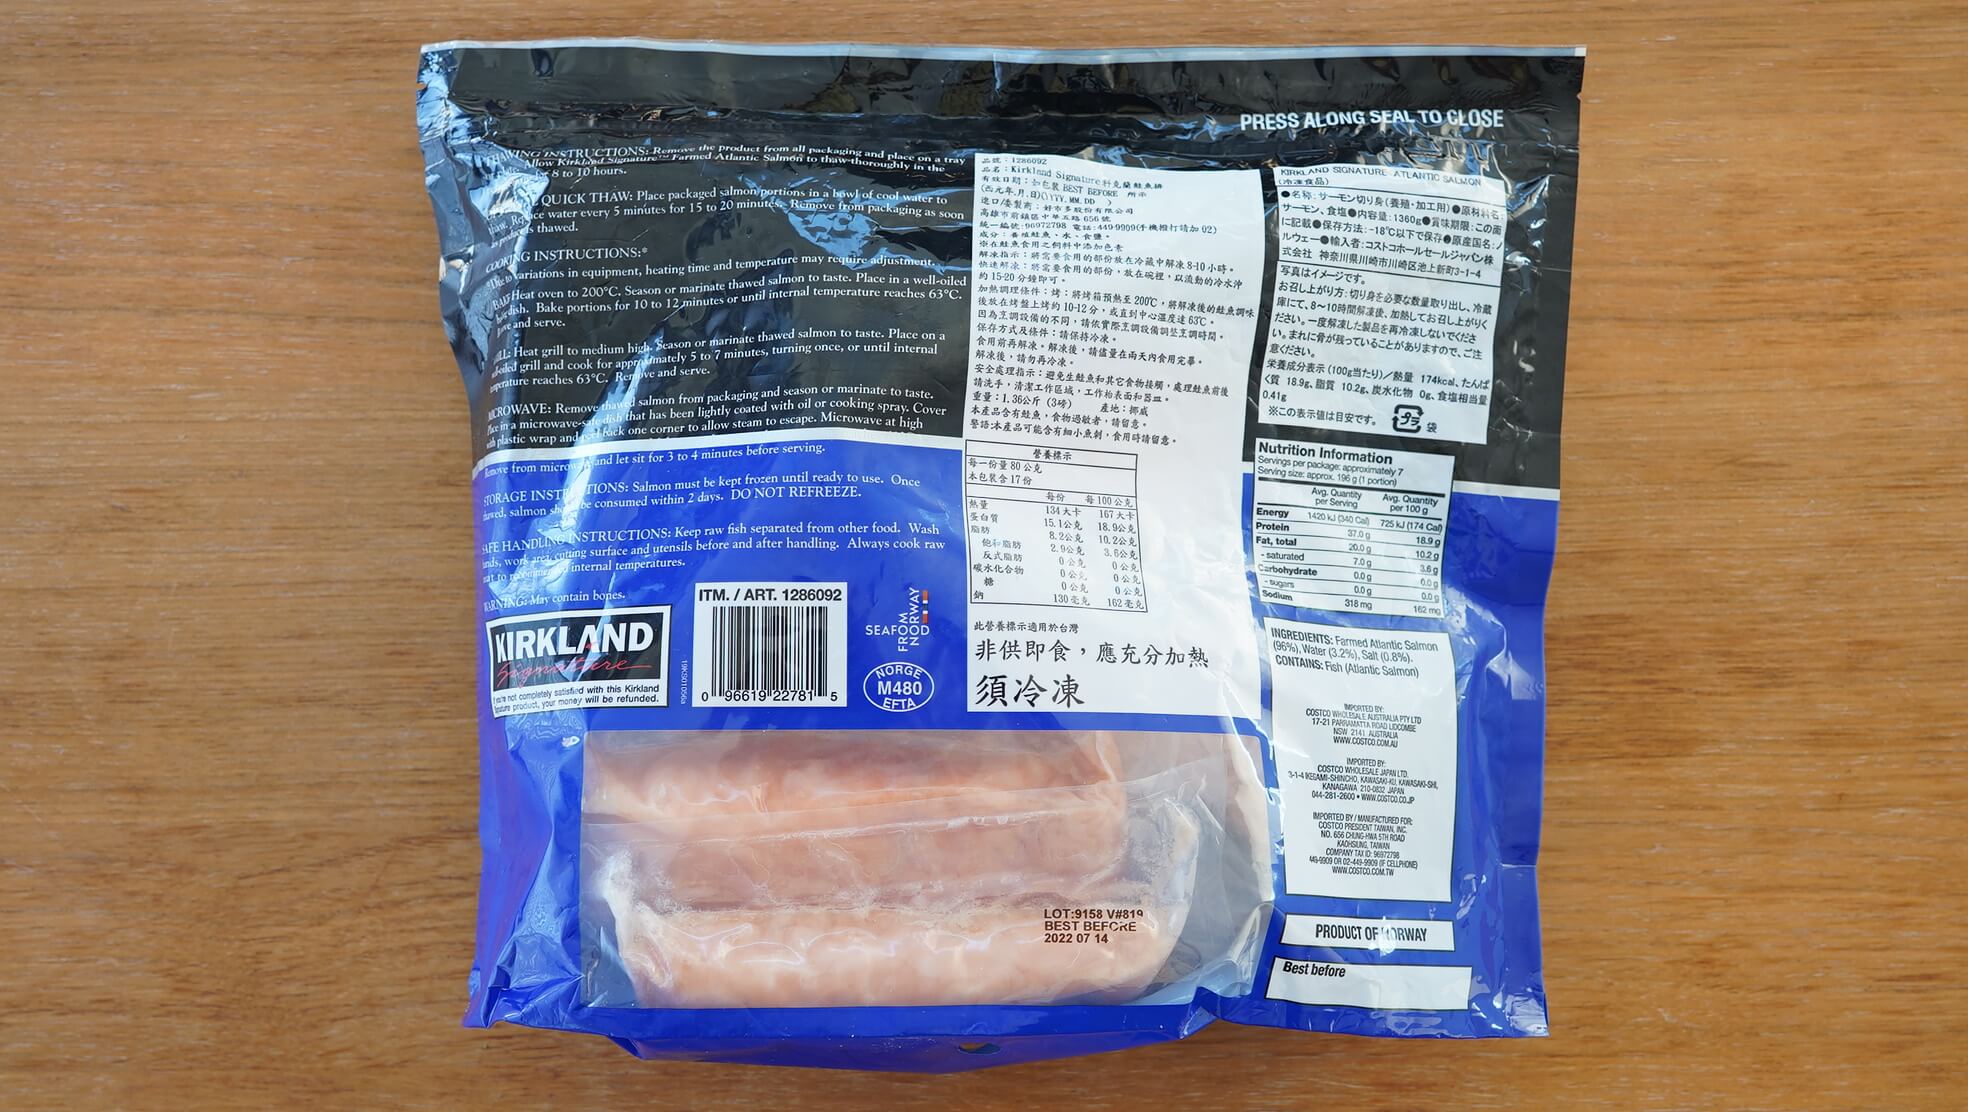 コストコの冷凍食品「アトランティック・サーモン」のパッケージ裏面の写真